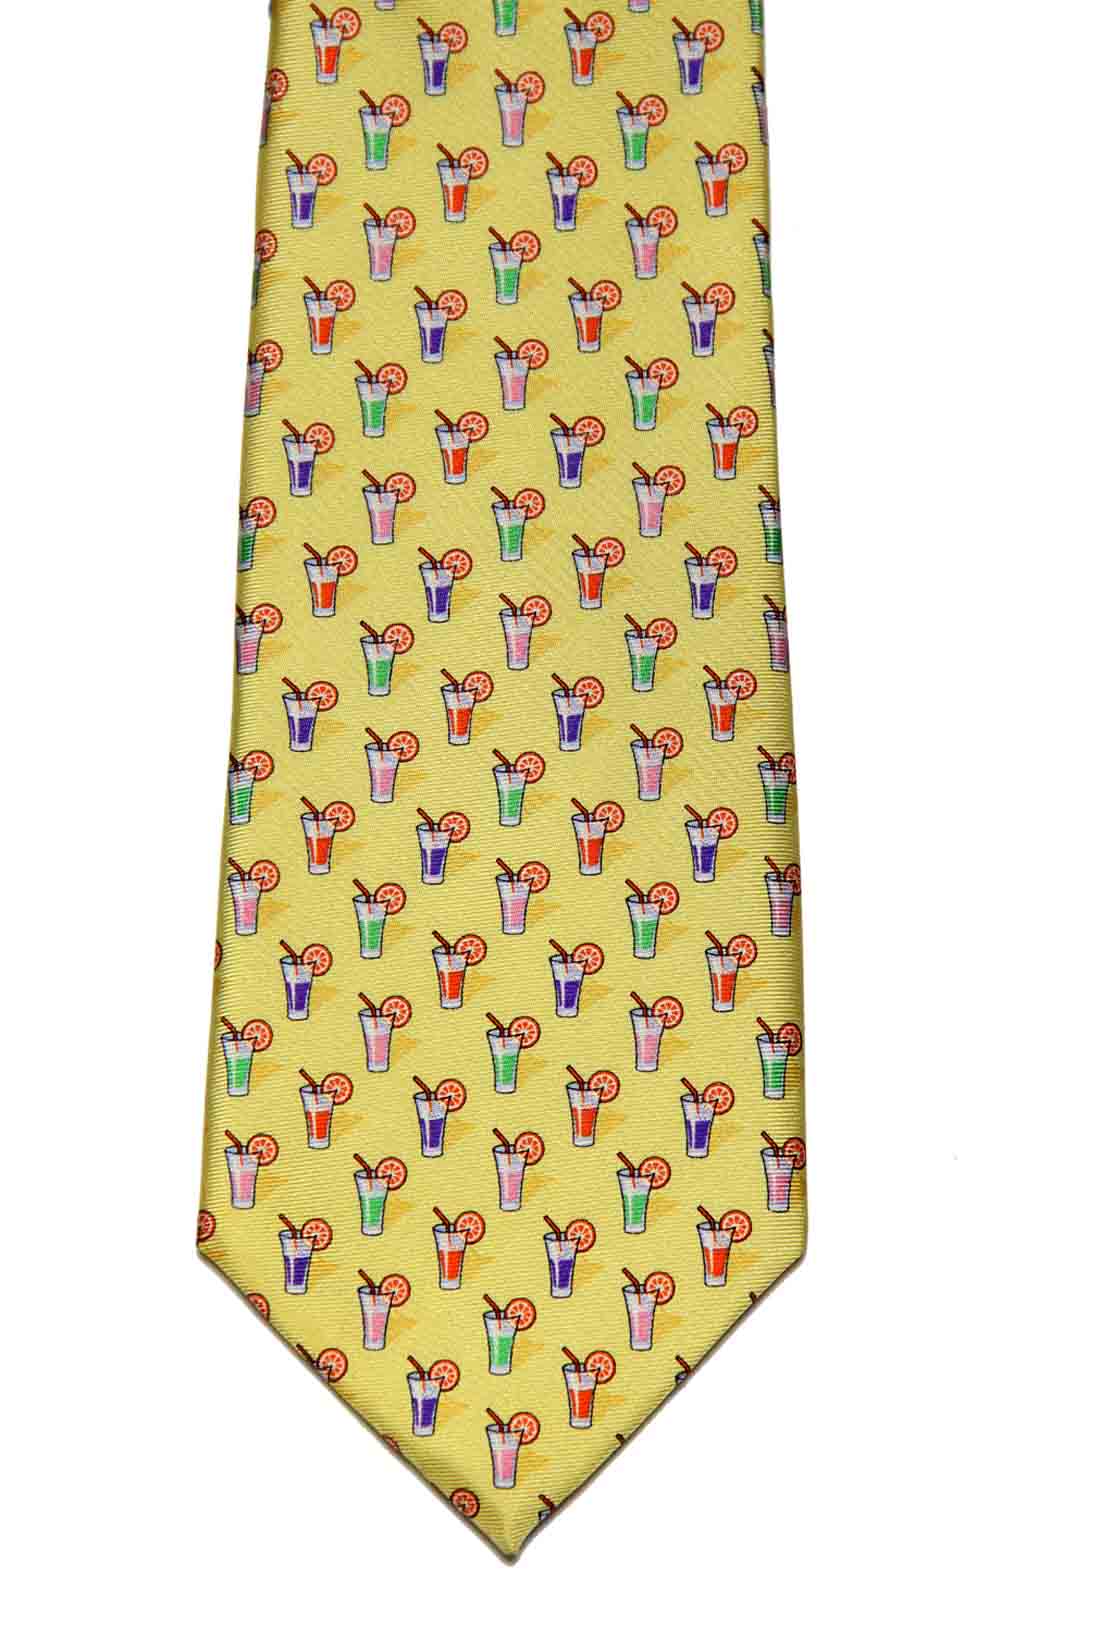 Ralph Lauren Silk Tie Cocktails Pattern Yellow Men's